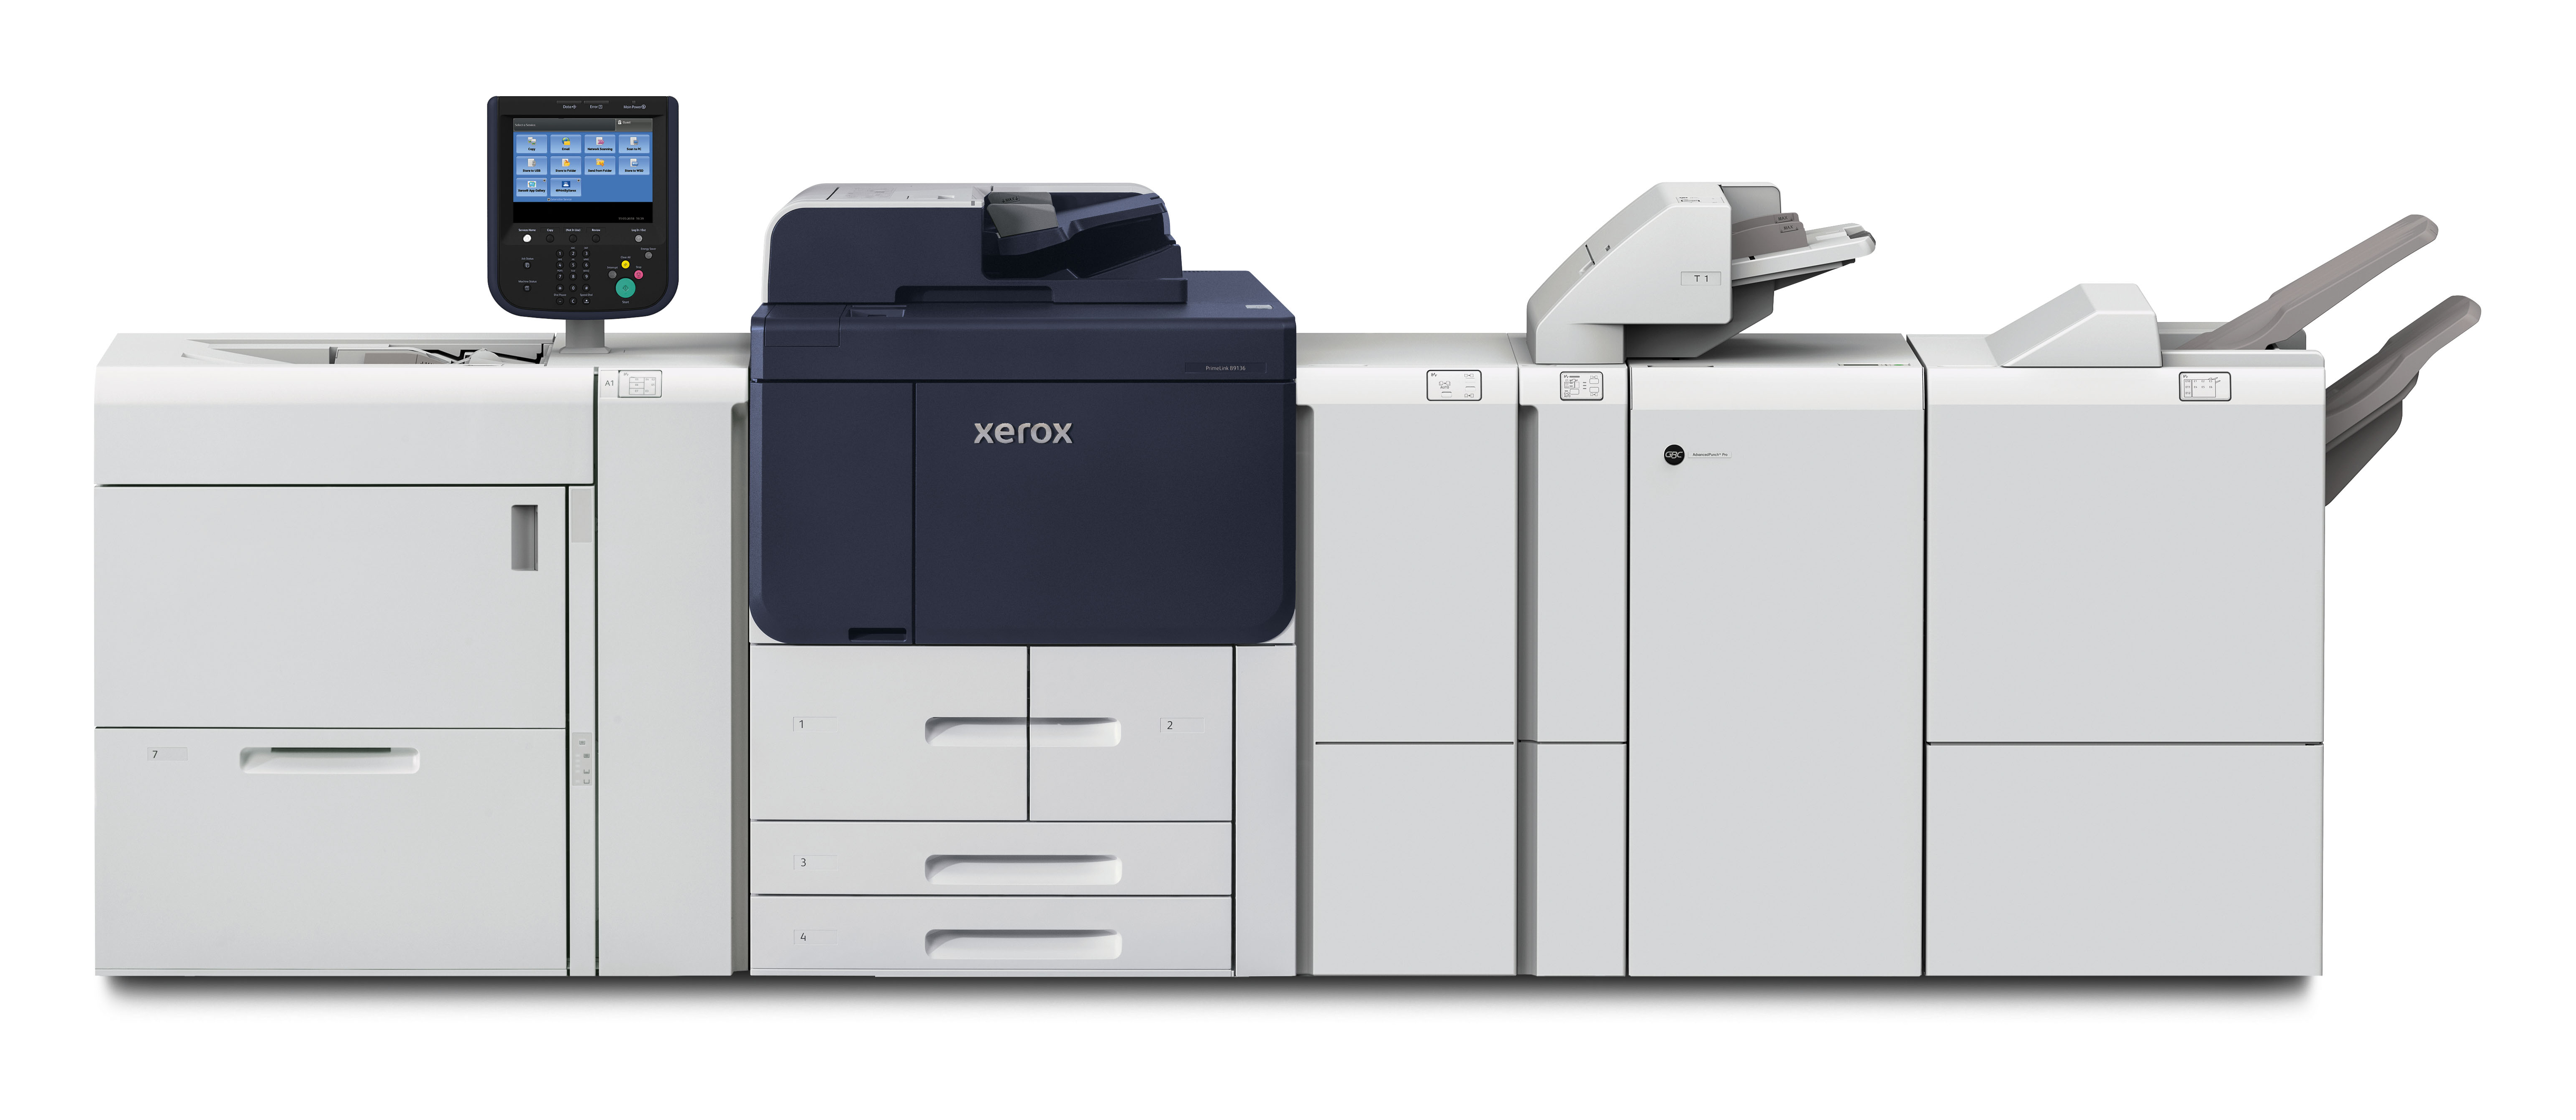 מכונות הצילום/מדפסות מסדרת Xerox - PrimeLink B9100 Series